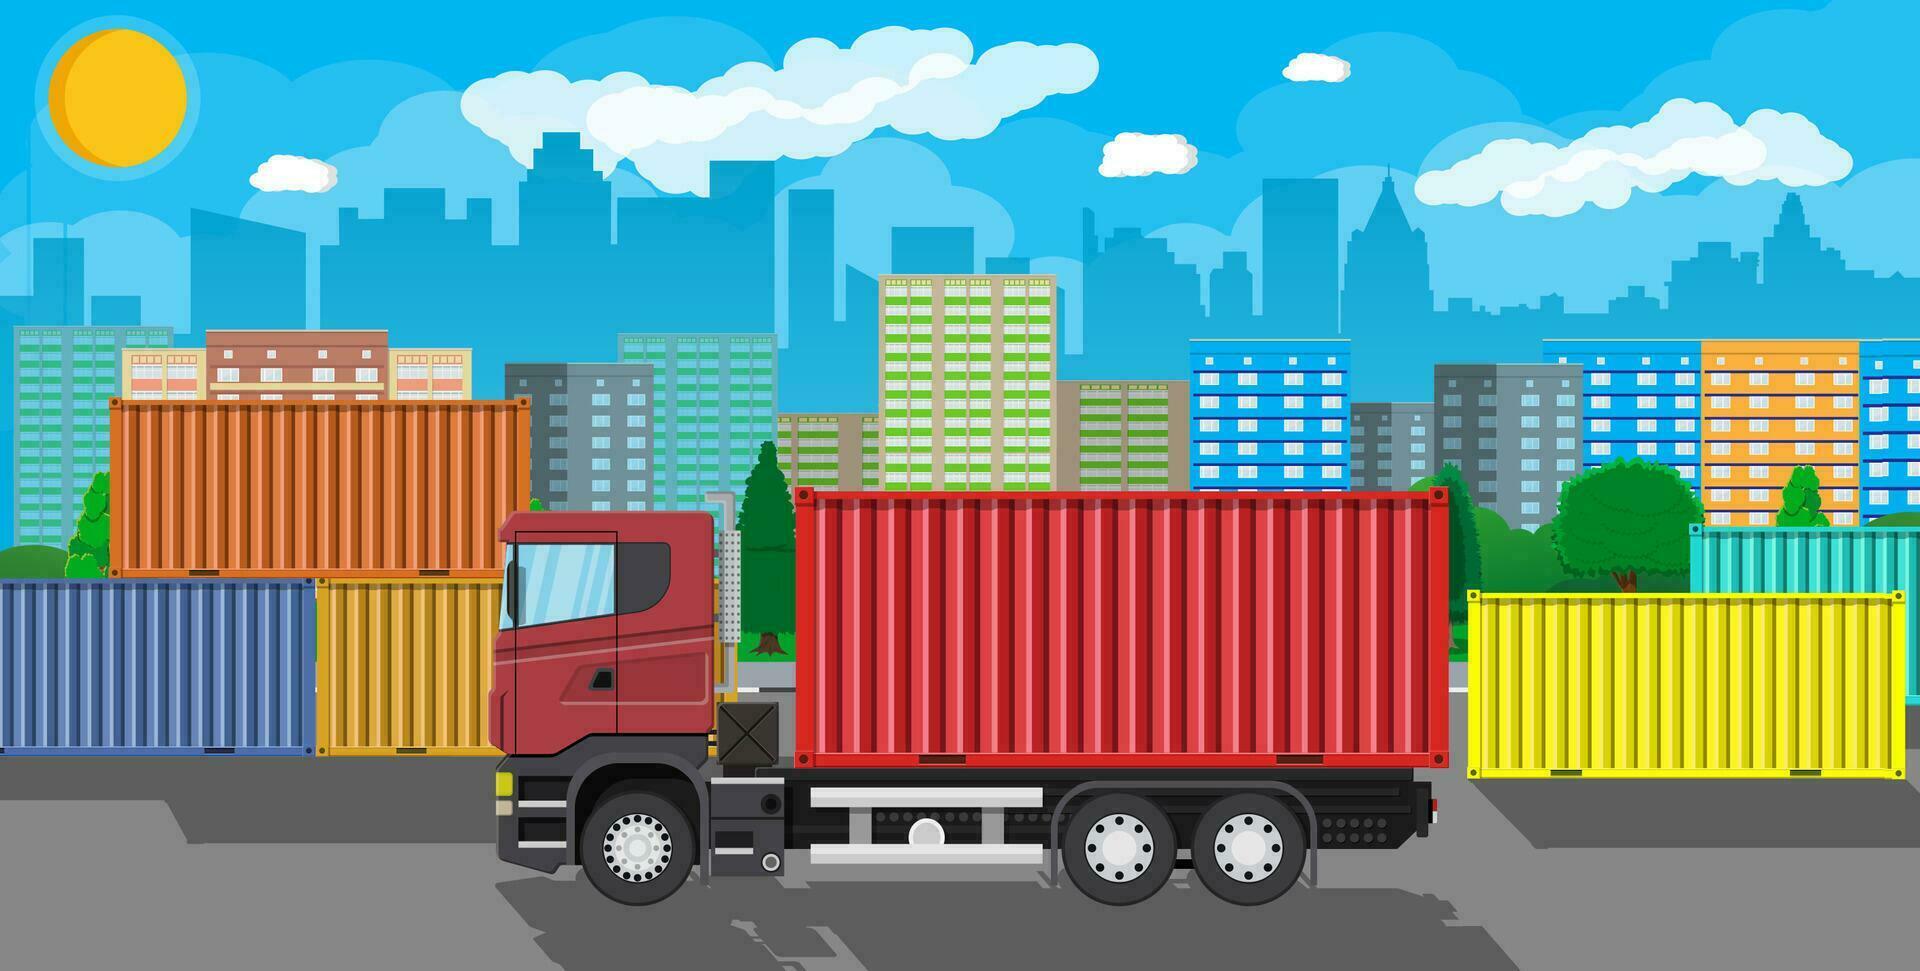 frakt leverans lastbil med metall behållare. frakt och leverans av varor. bil för transport. trailer fordon i stad. stadsbild med träd, byggnad och himmel. vektor illustration i platt stil